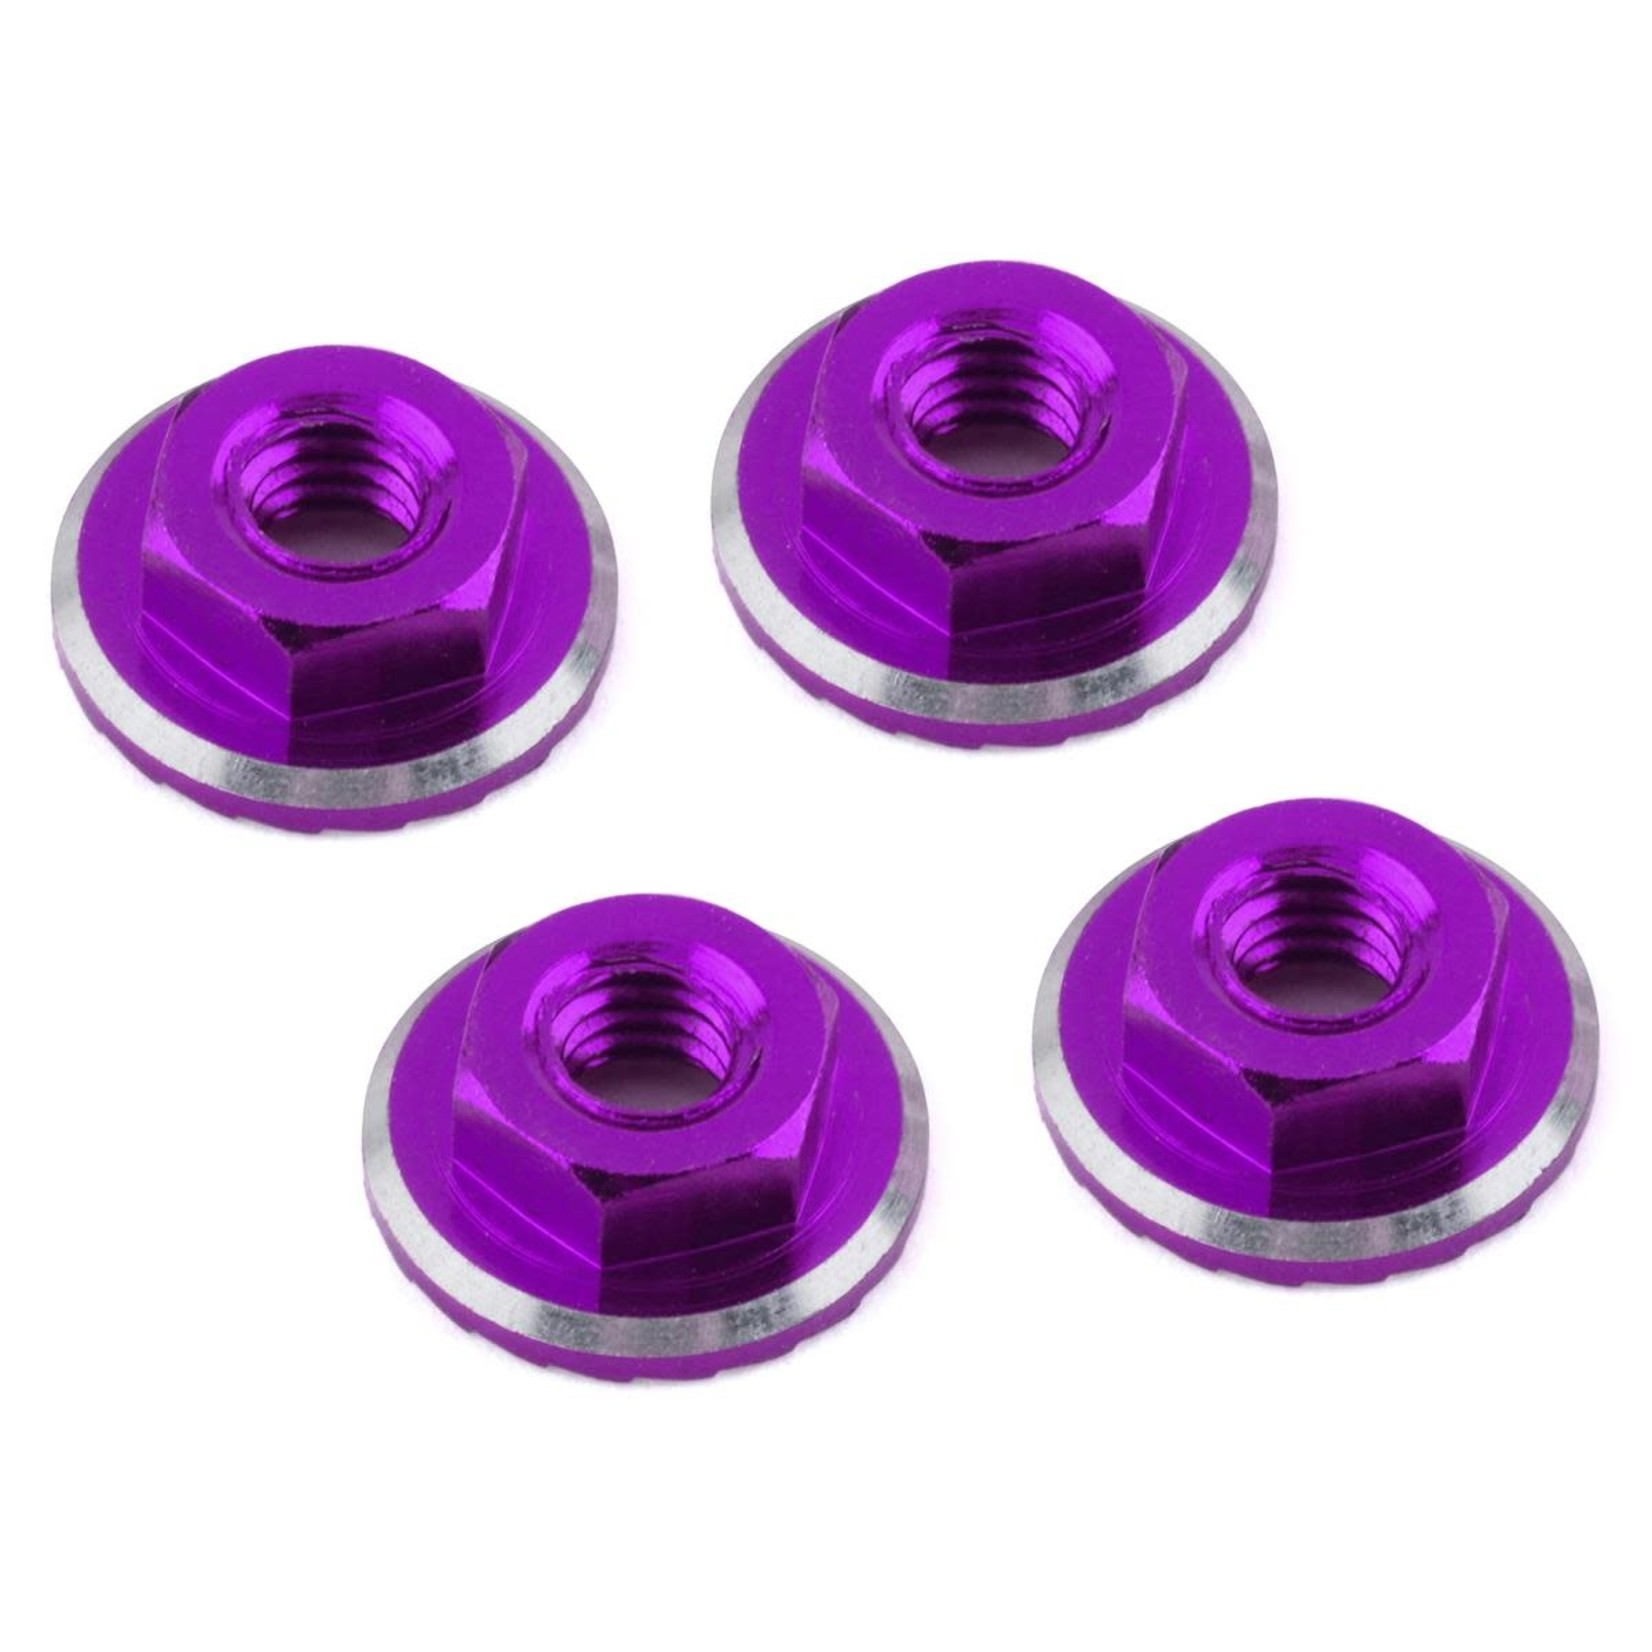 1UP Racing 1UP Racing Lockdown UltraLite 4mm Serrated Wheel Nuts (Purple) (4) #80521